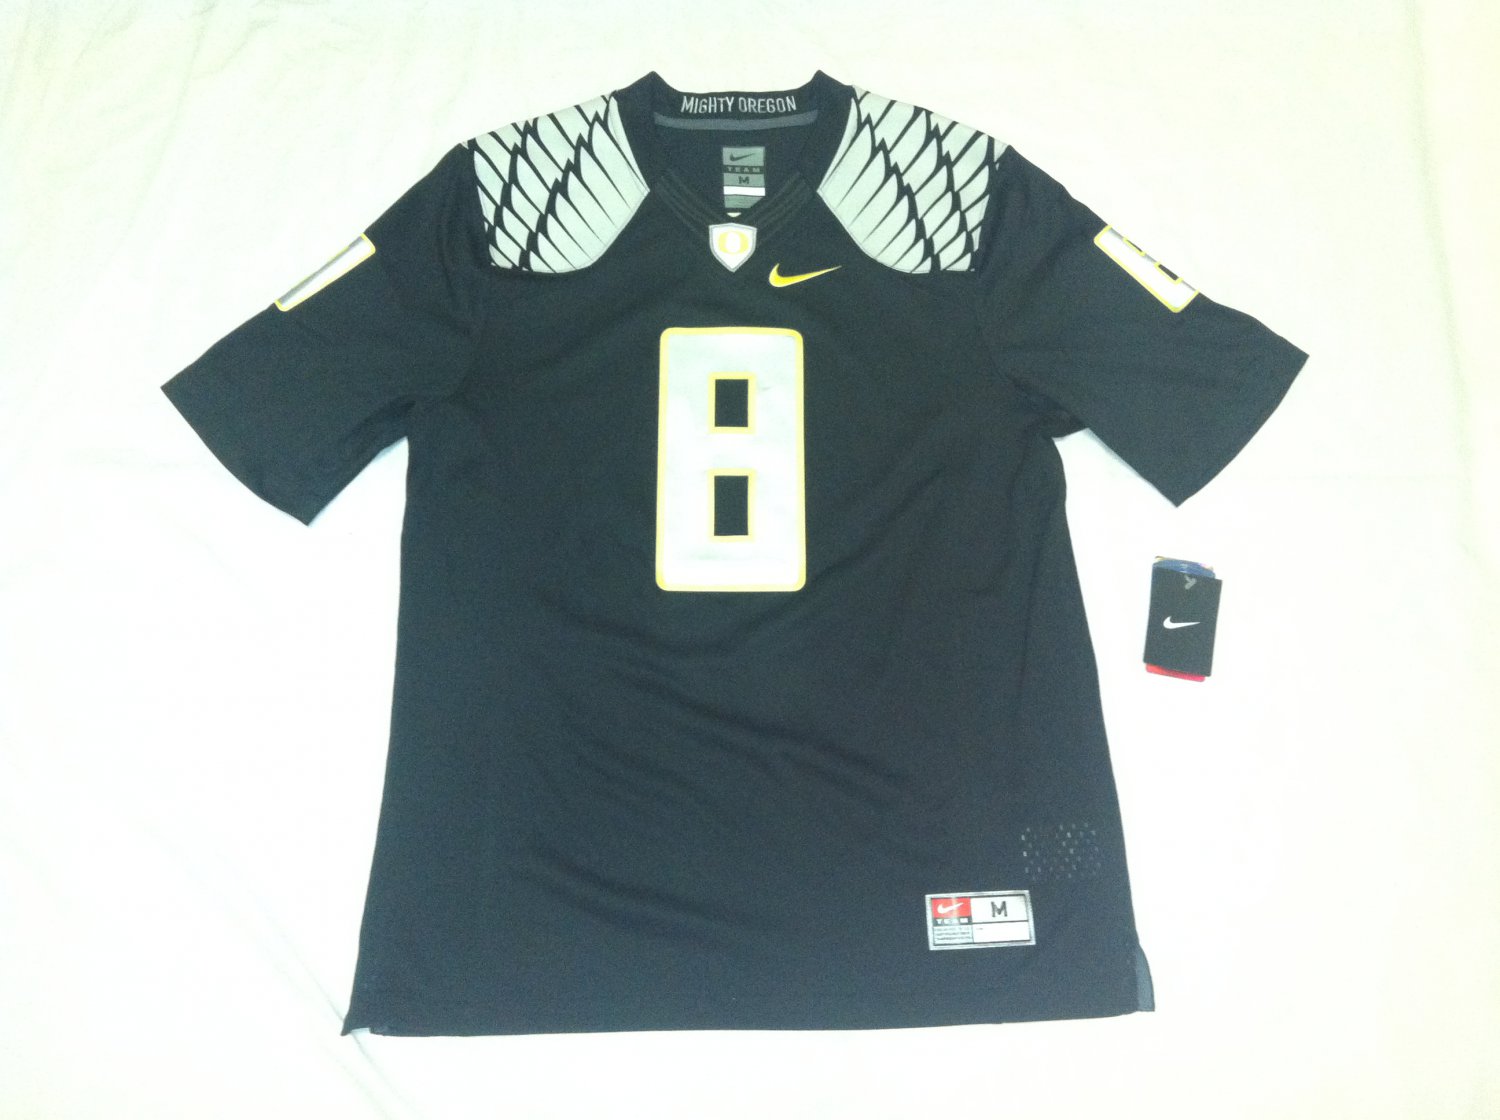 Oregon Ducks Black #8 (Marcus Mariota) Large Nike Limited Jersey